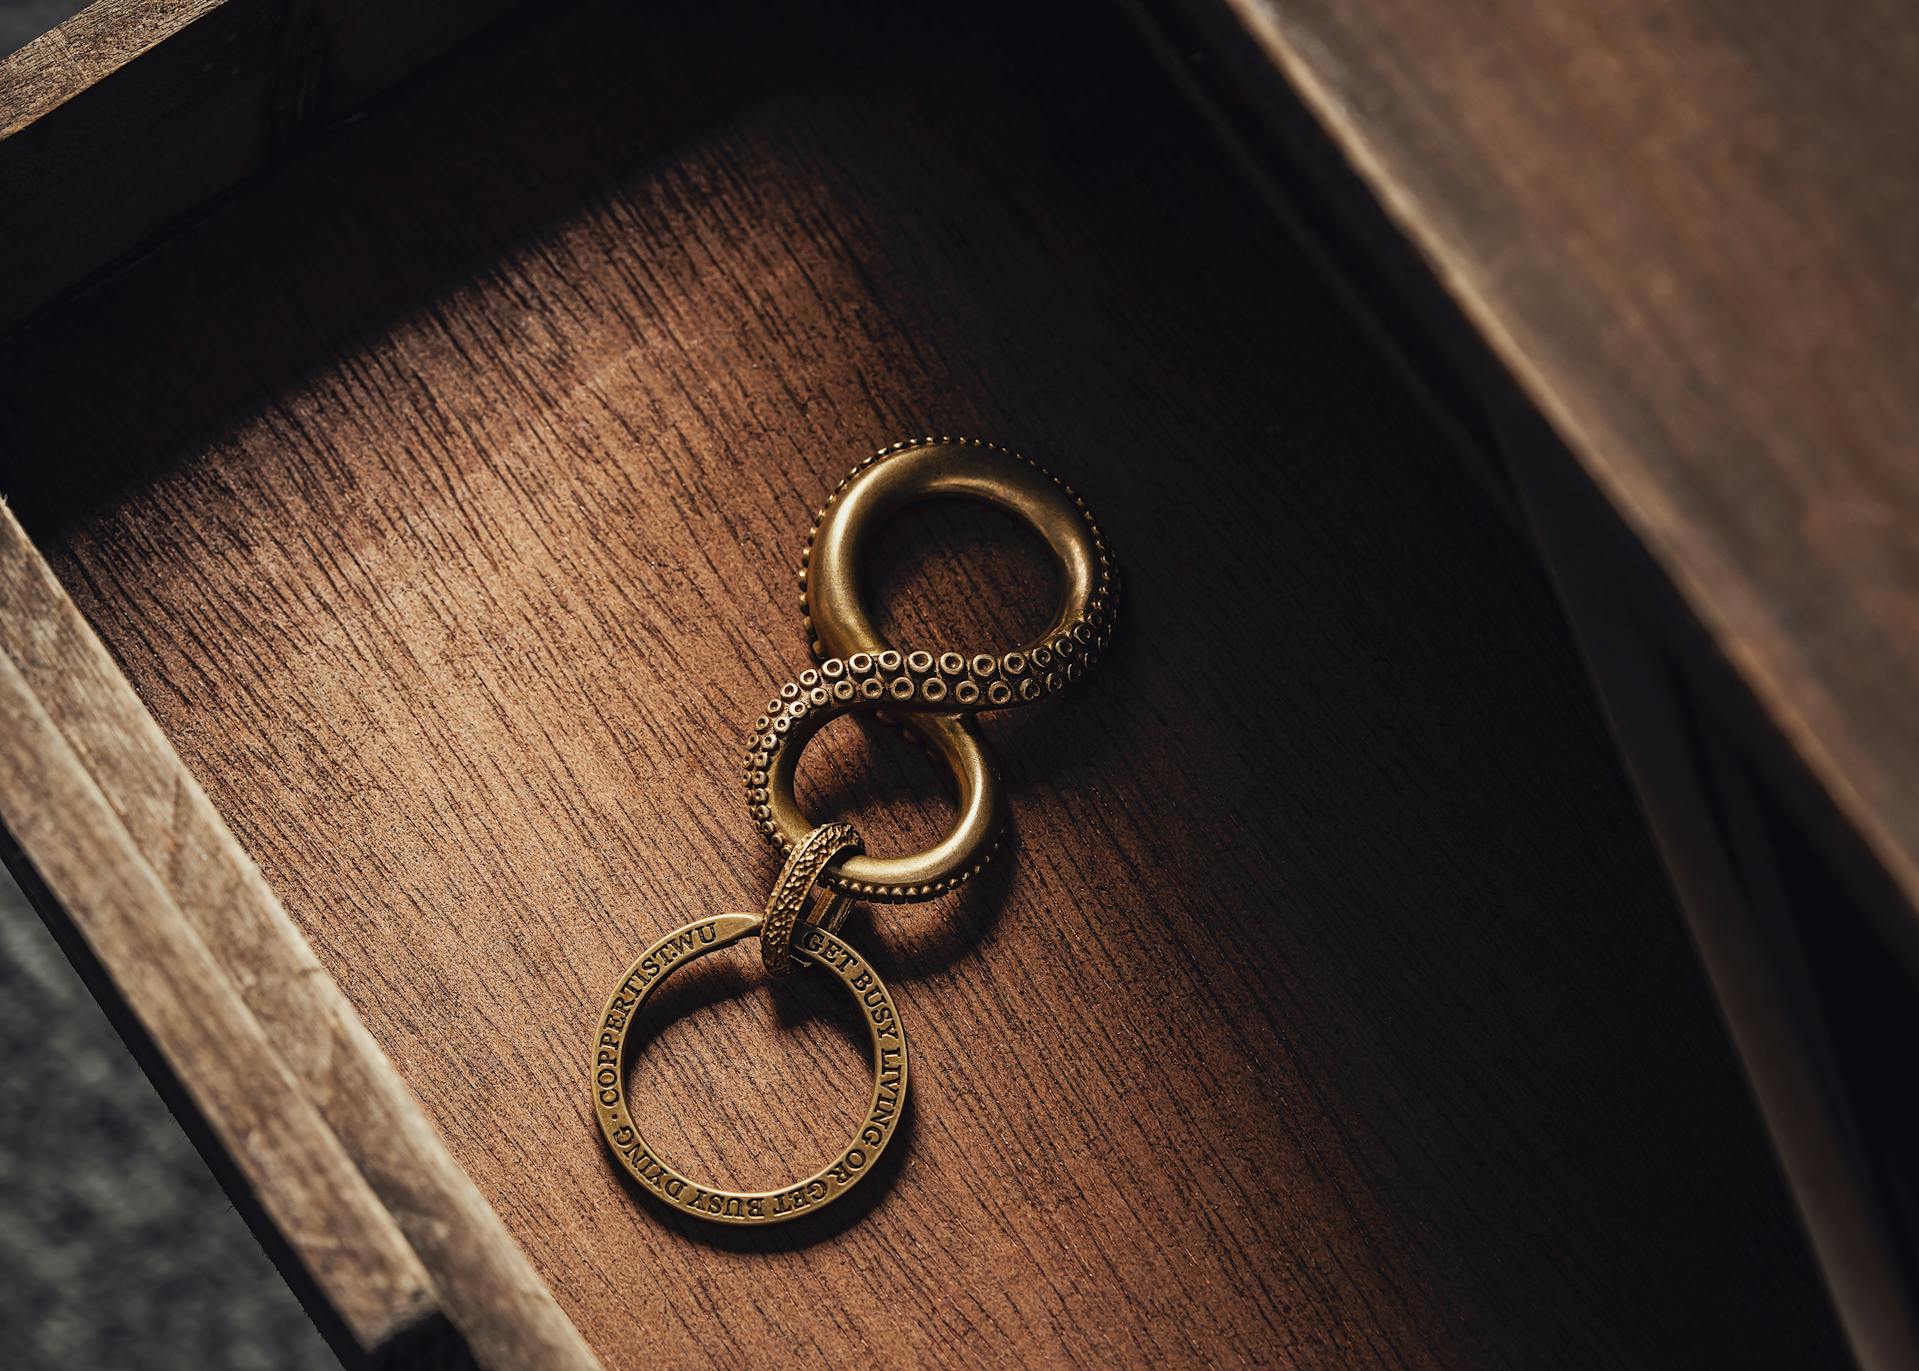 Un tiroir ouvert avec un porte-clés | Source : Pexels